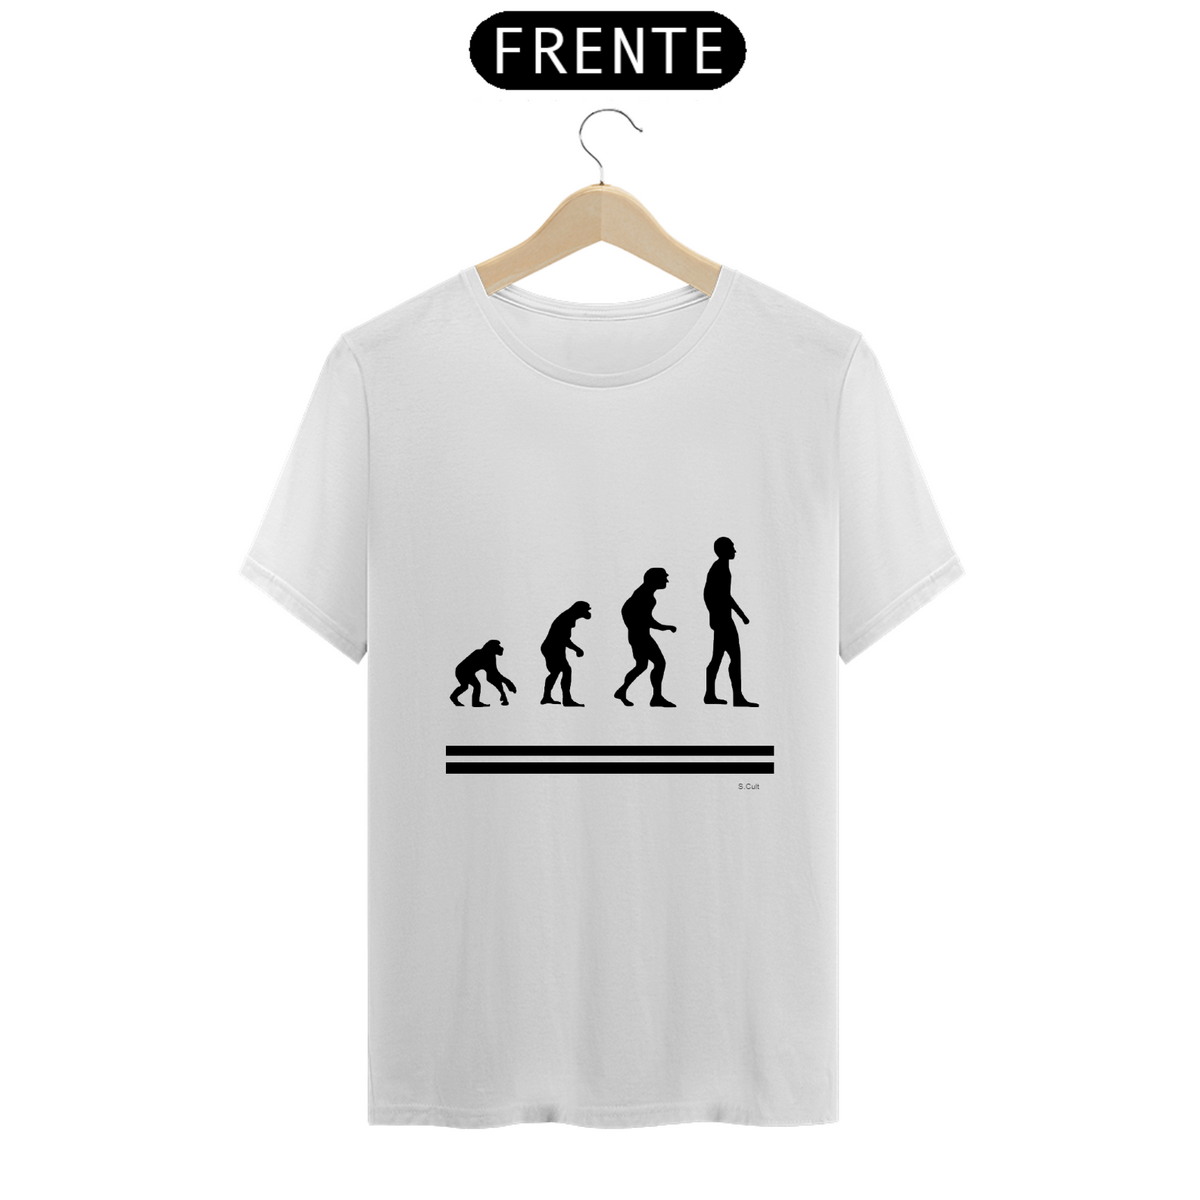 Nome do produto: T-Shirt Prime - Coleção cientista maluco - Charles Darwin